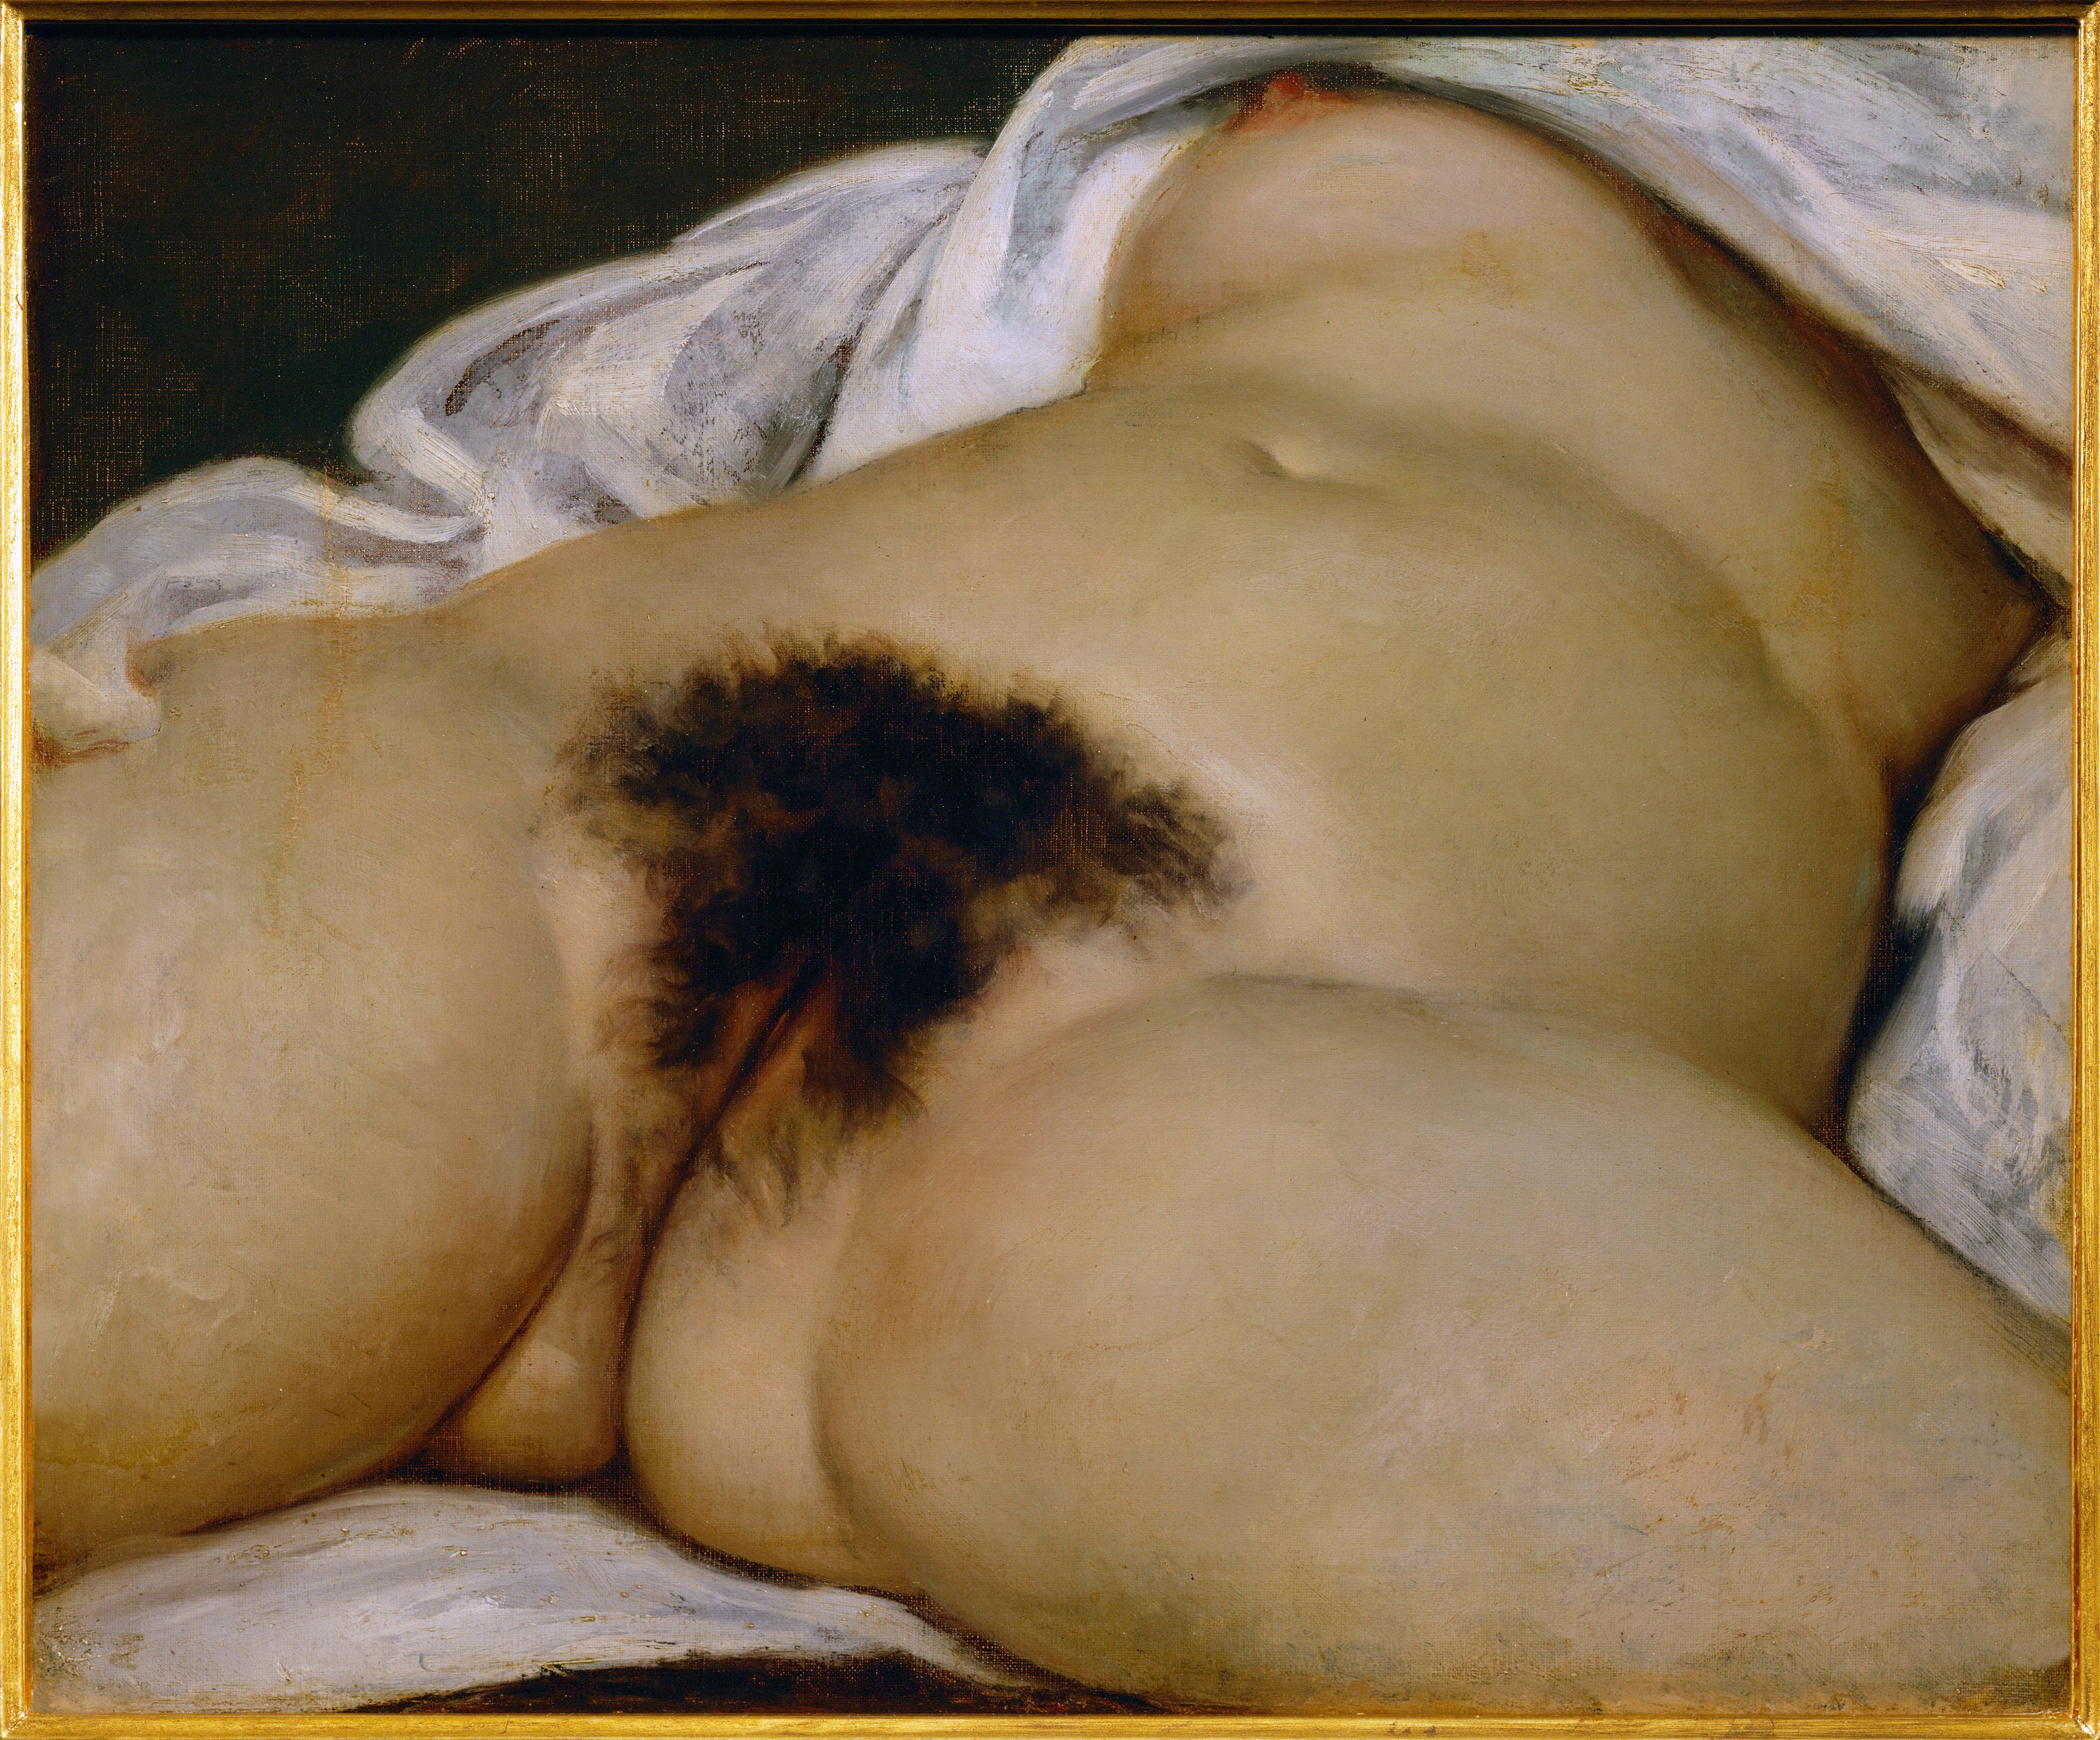 Gustave Coubet, L'origine du monde, 1866, Huile sur toile, 55cm x 46cm, Musée d'Orsay